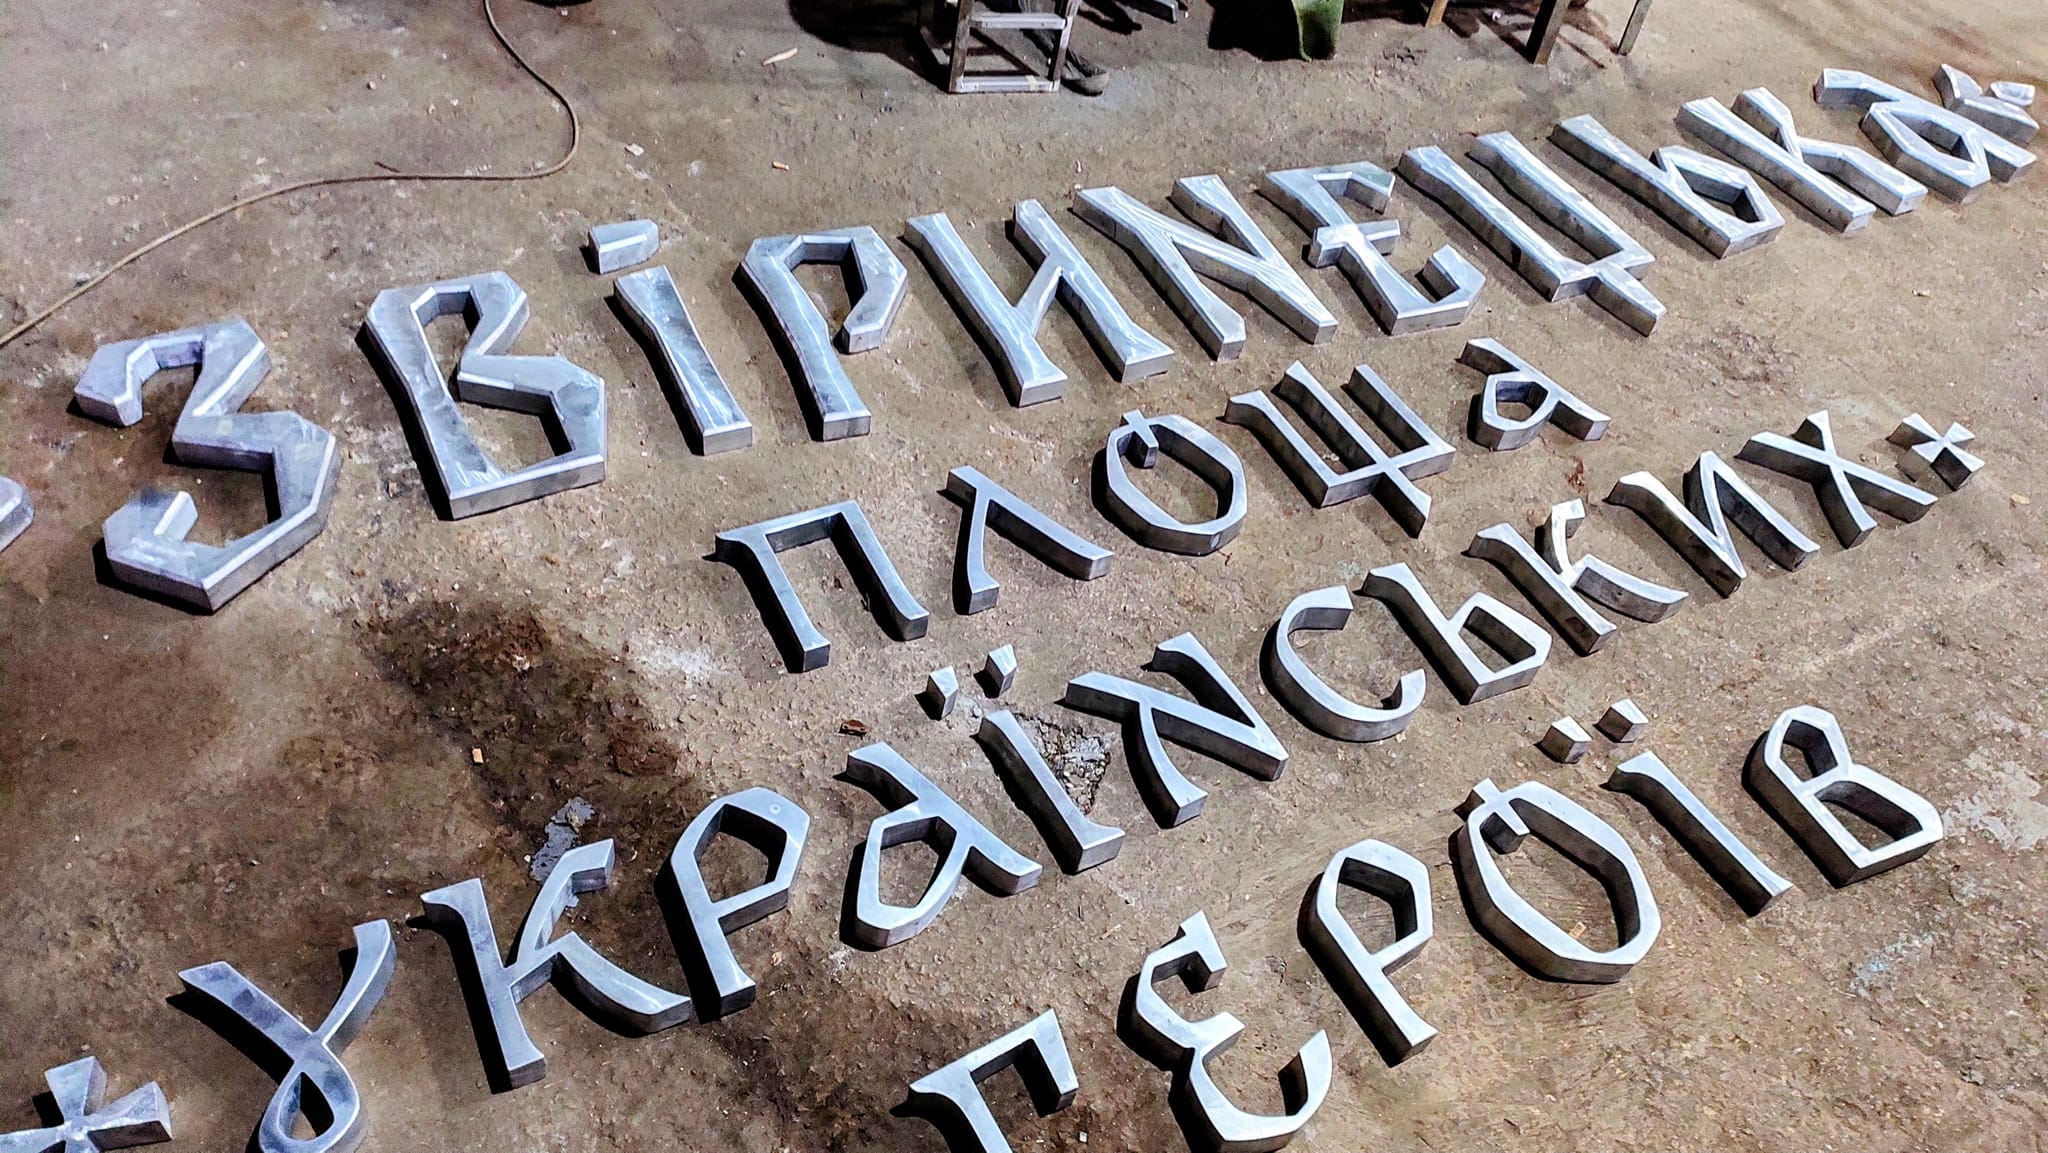 Як вручну створюють нові літери для станцій "Звіринецька" та "Площа Українських Героїв": відео